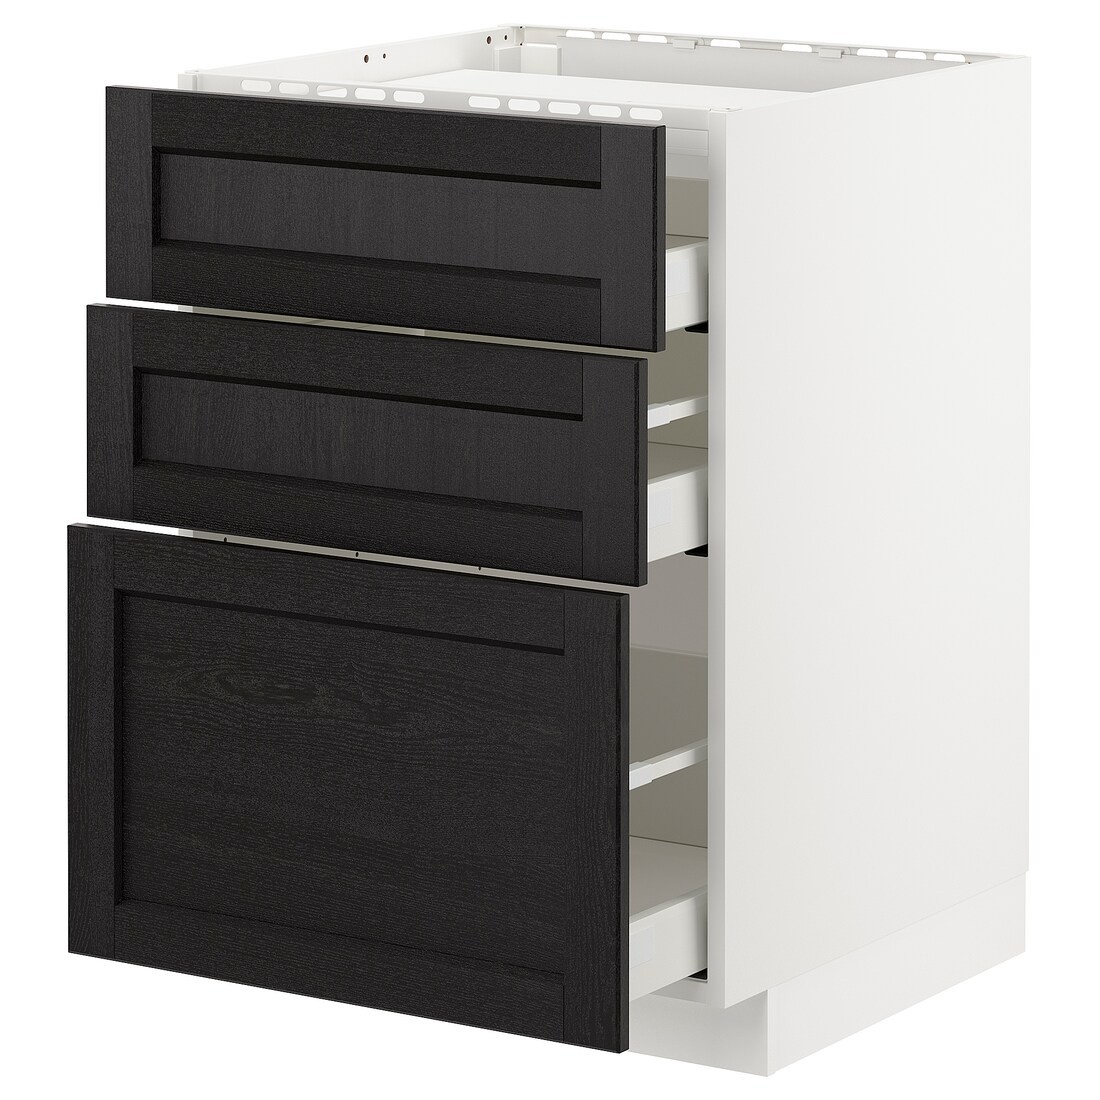 IKEA METOD МЕТОД / MAXIMERA МАКСИМЕРА Напольный шкаф с ящиками, белый / Lerhyttan черная морилка, 60x60 см 39257202 392.572.02